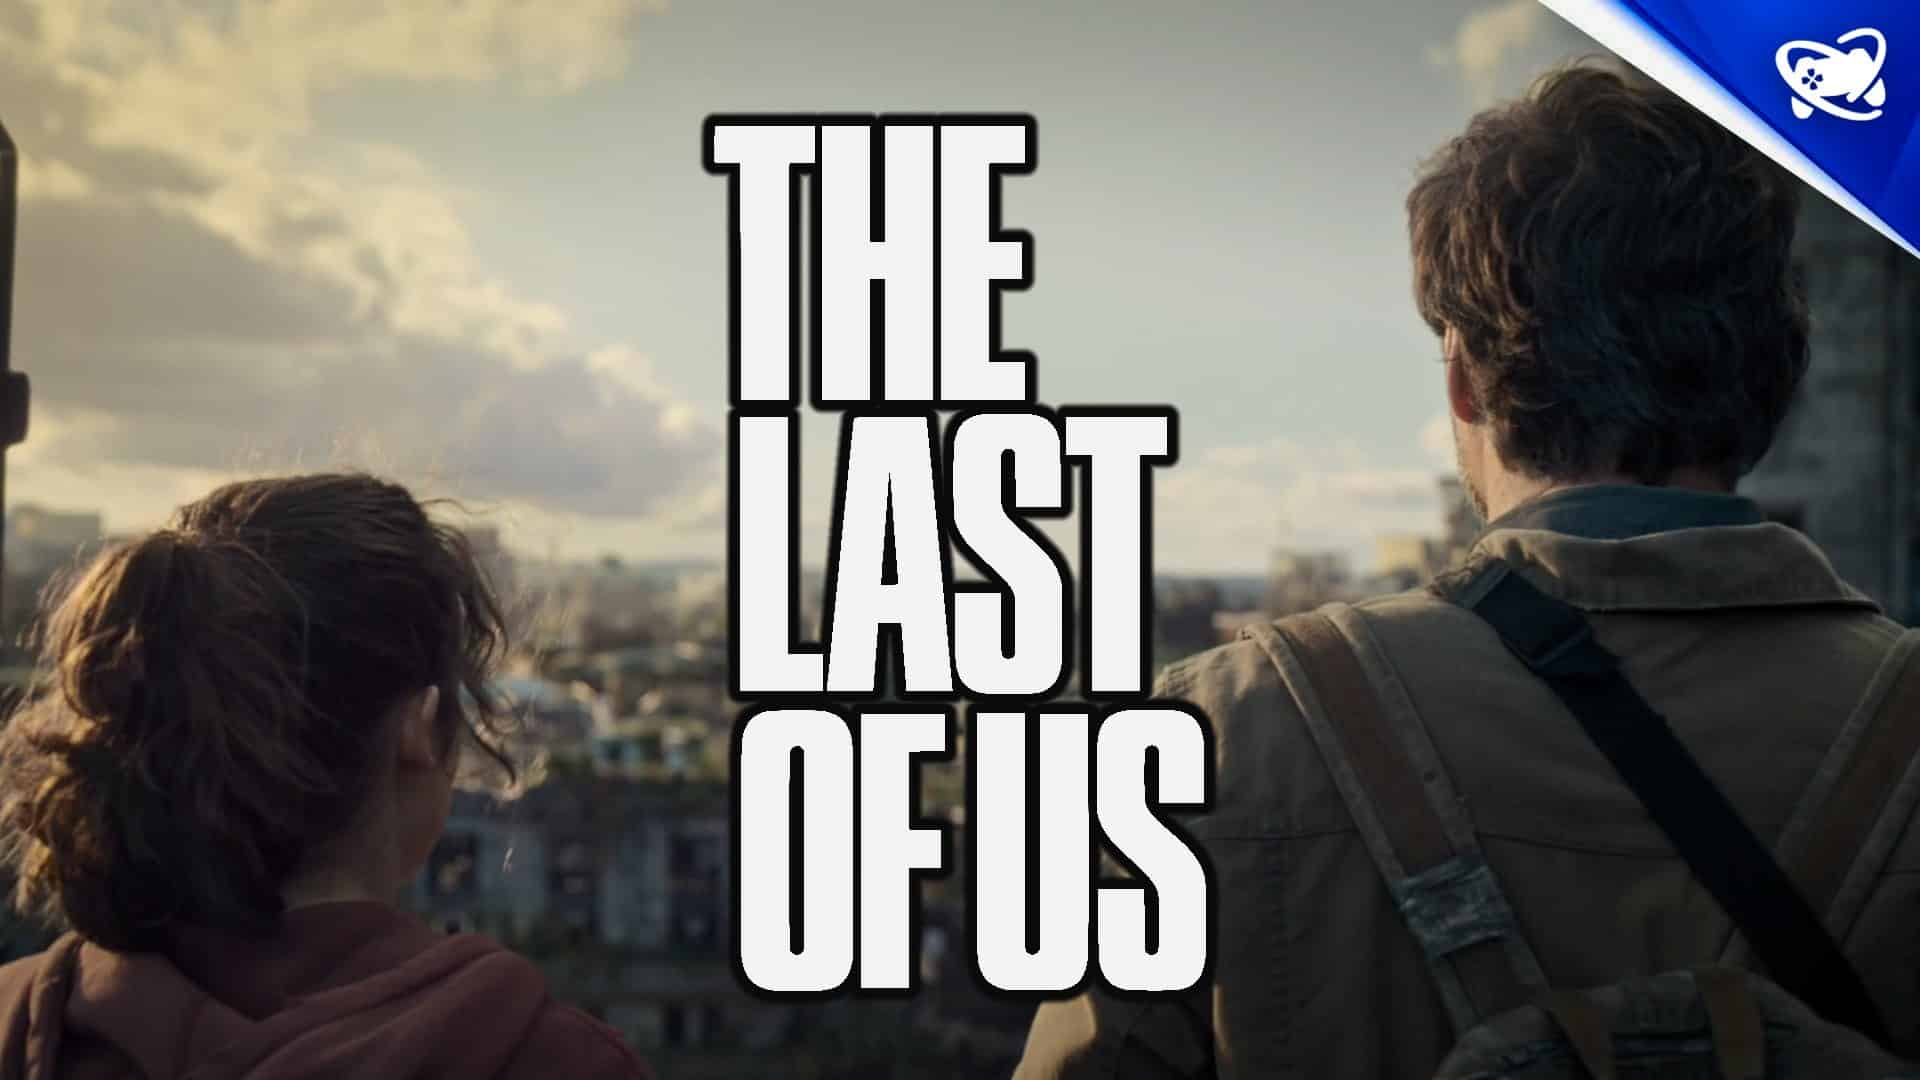 The Last of Us Parte 2: Final do jogo poderia ter tomado rumo bem